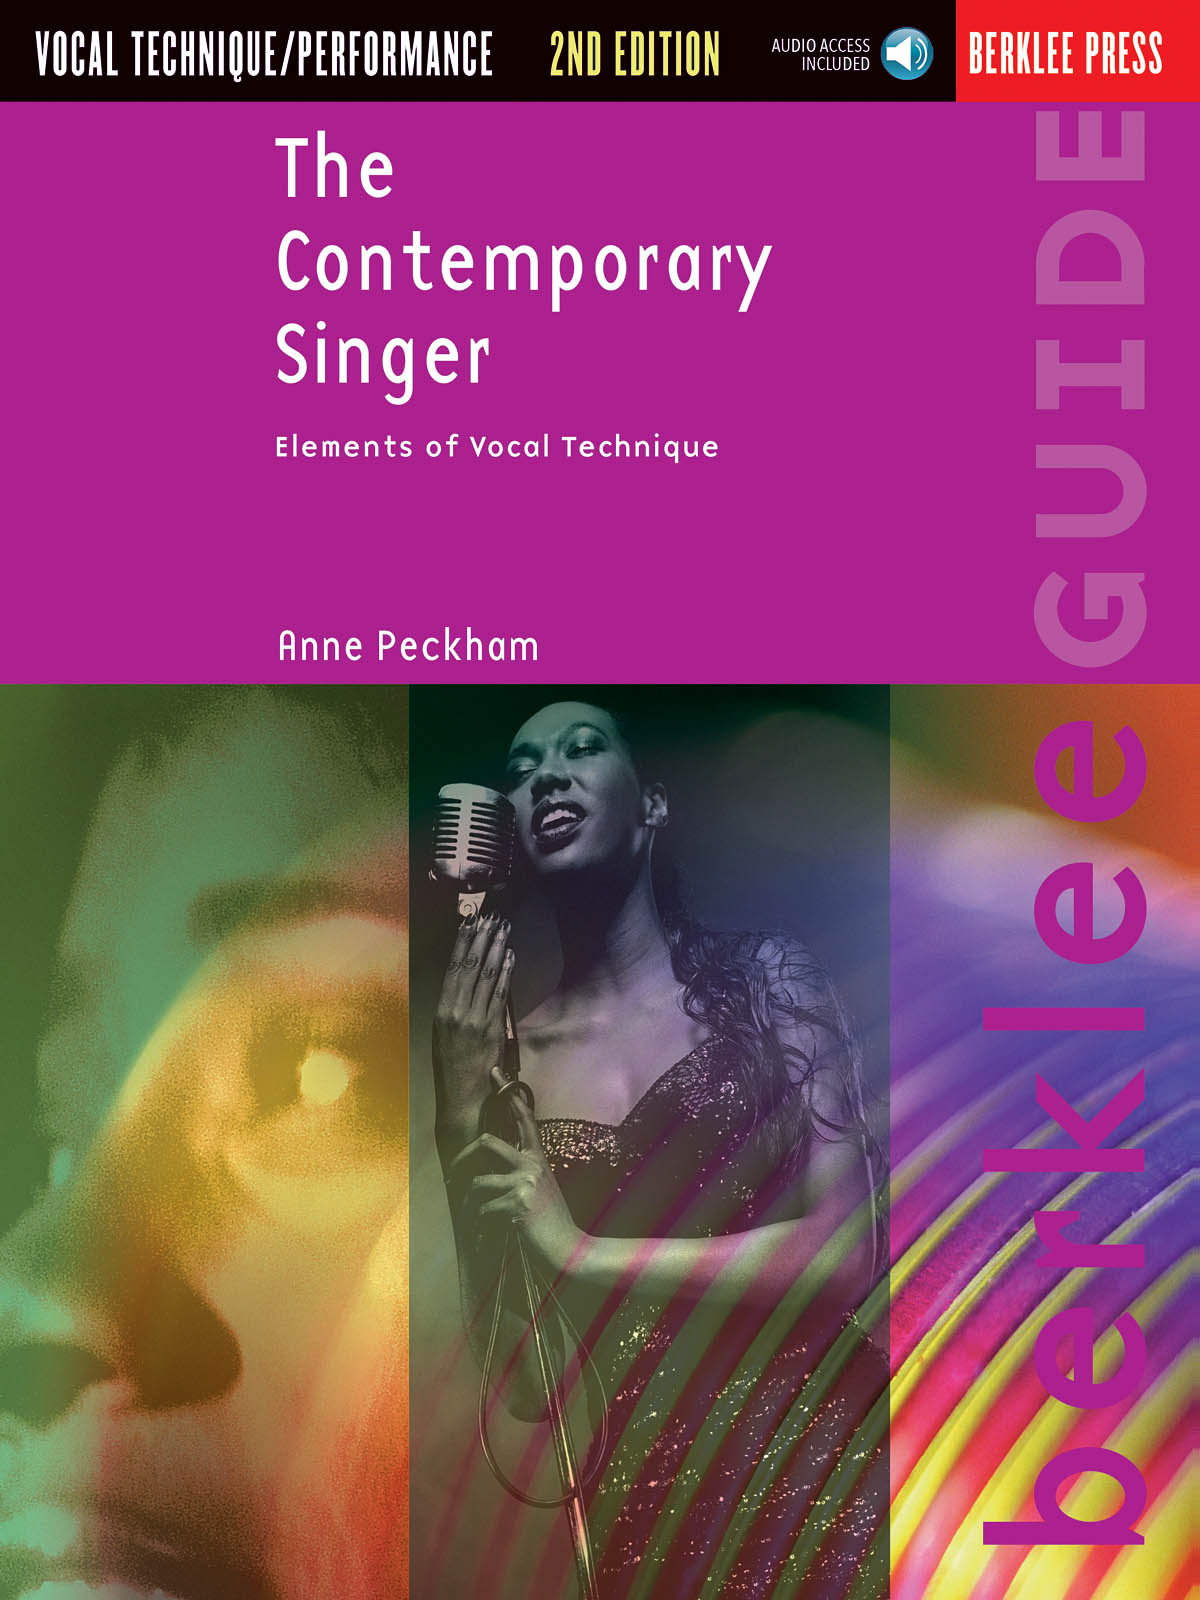 The Contemporary Singer – Elements of Vocal Technique a audio onlline